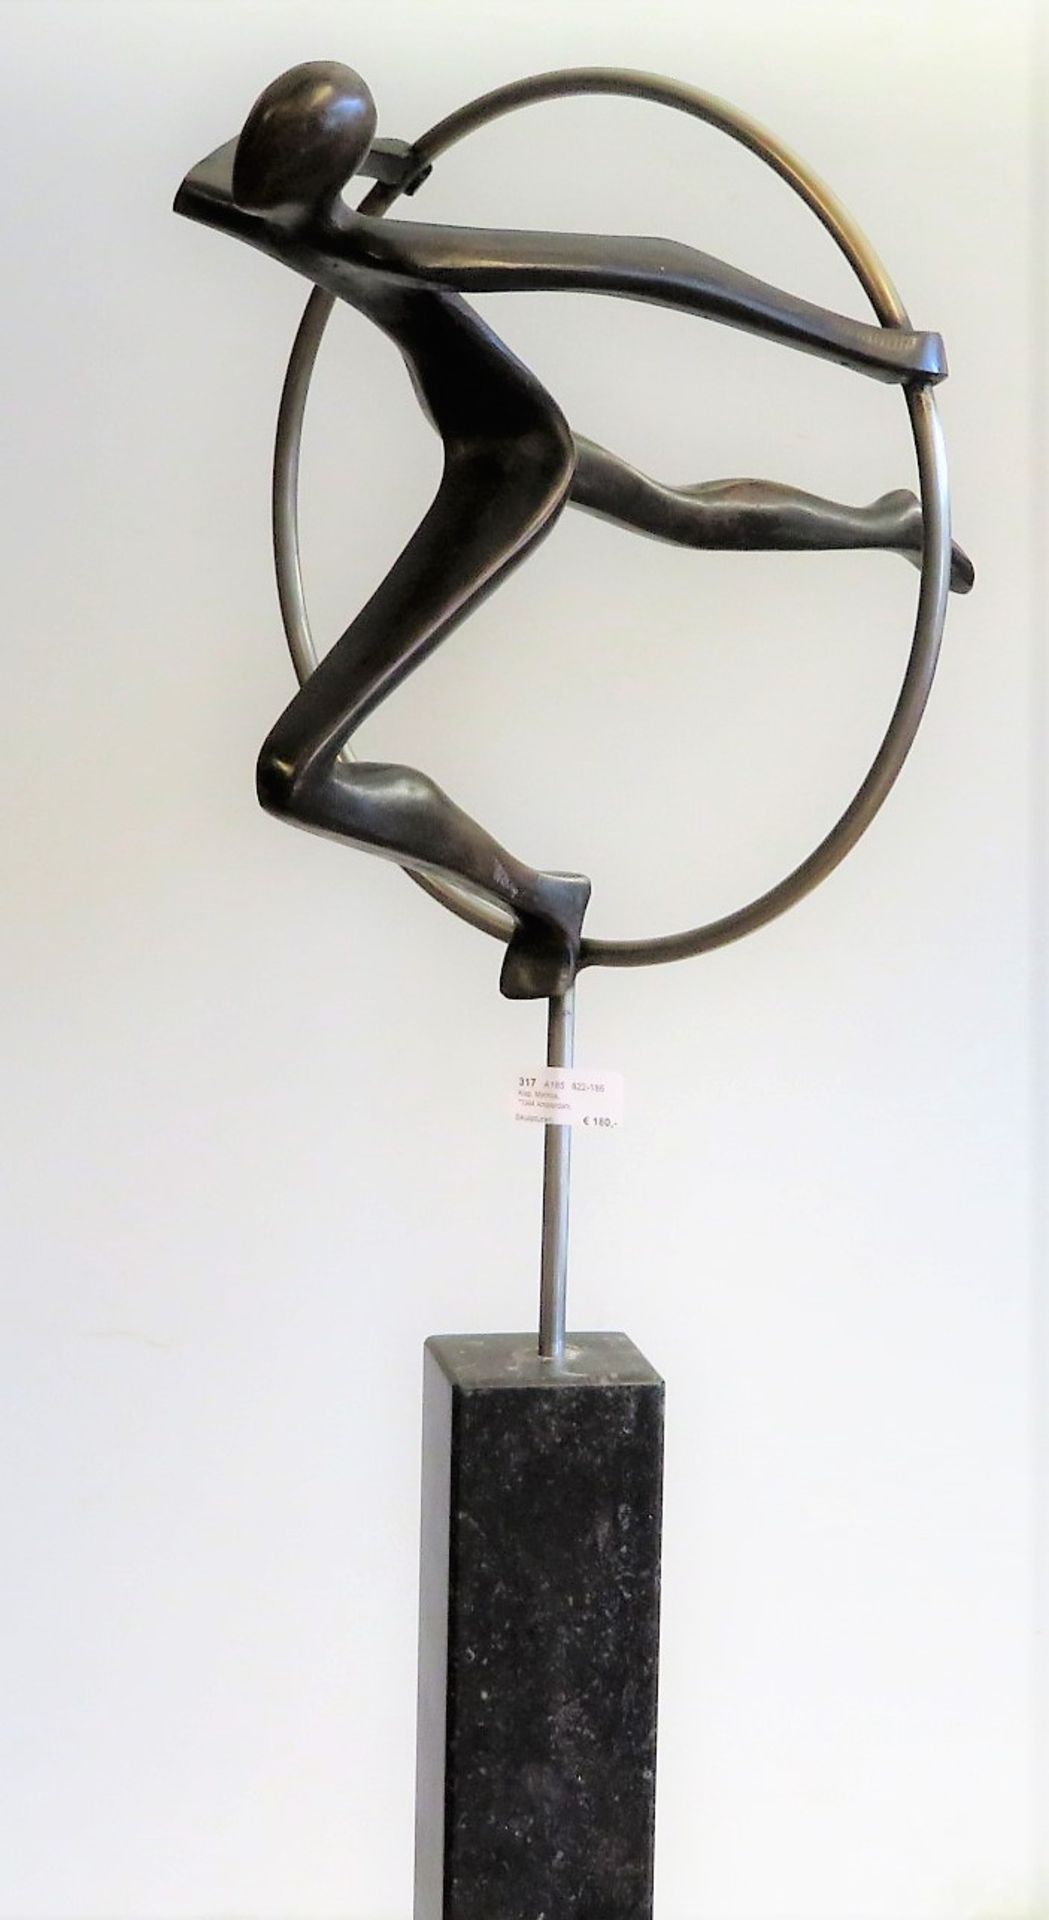 Klap, Marinus, *1944 Amsterdam, Niederländischer Bildhauer, tätig in Bergen,  - Bild 3 aus 4